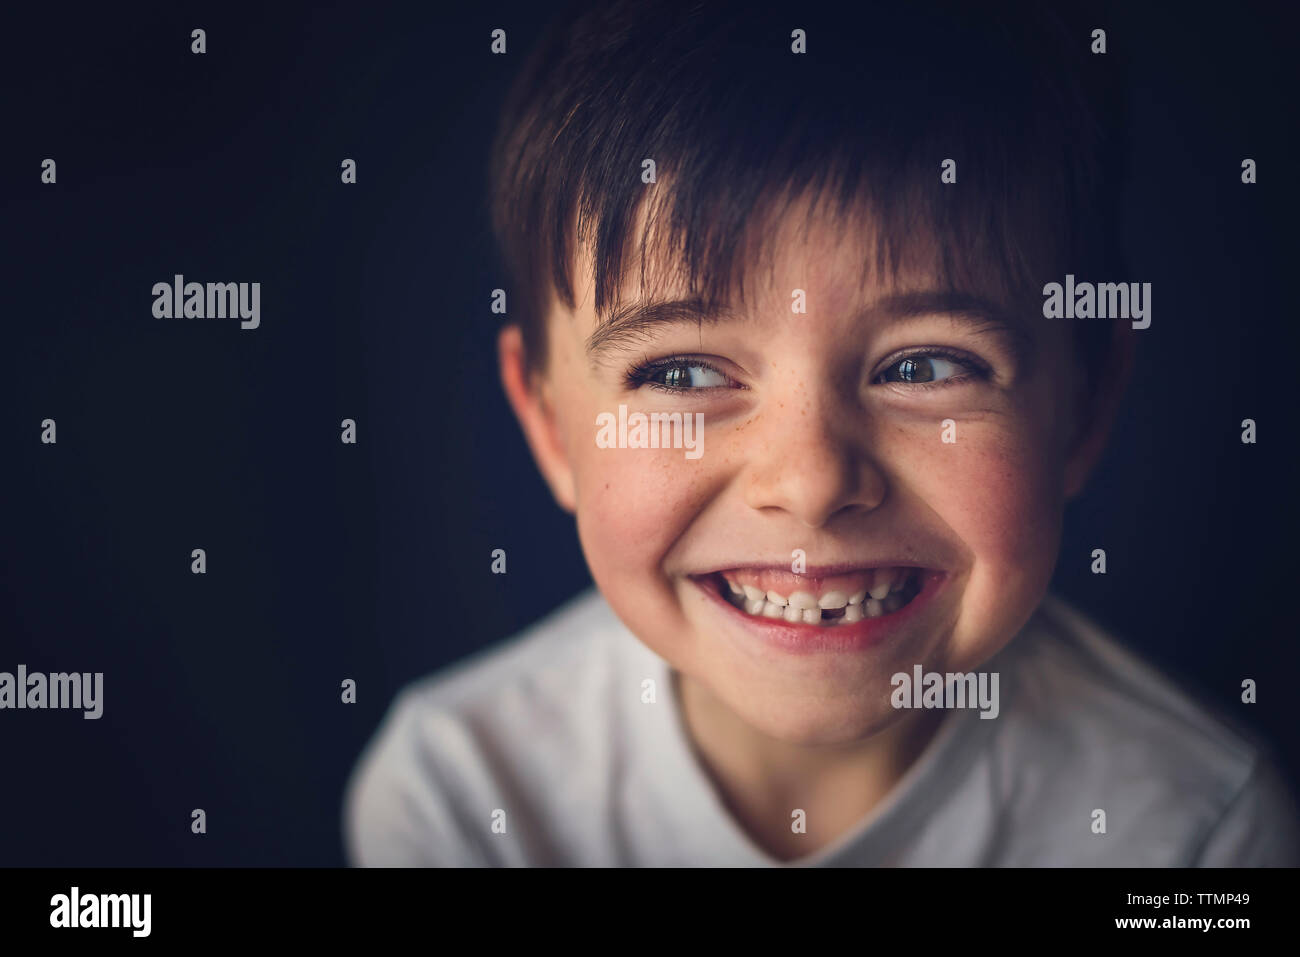 Allegro ragazzo con gap cercando dentata lontano nella camera oscura Foto Stock